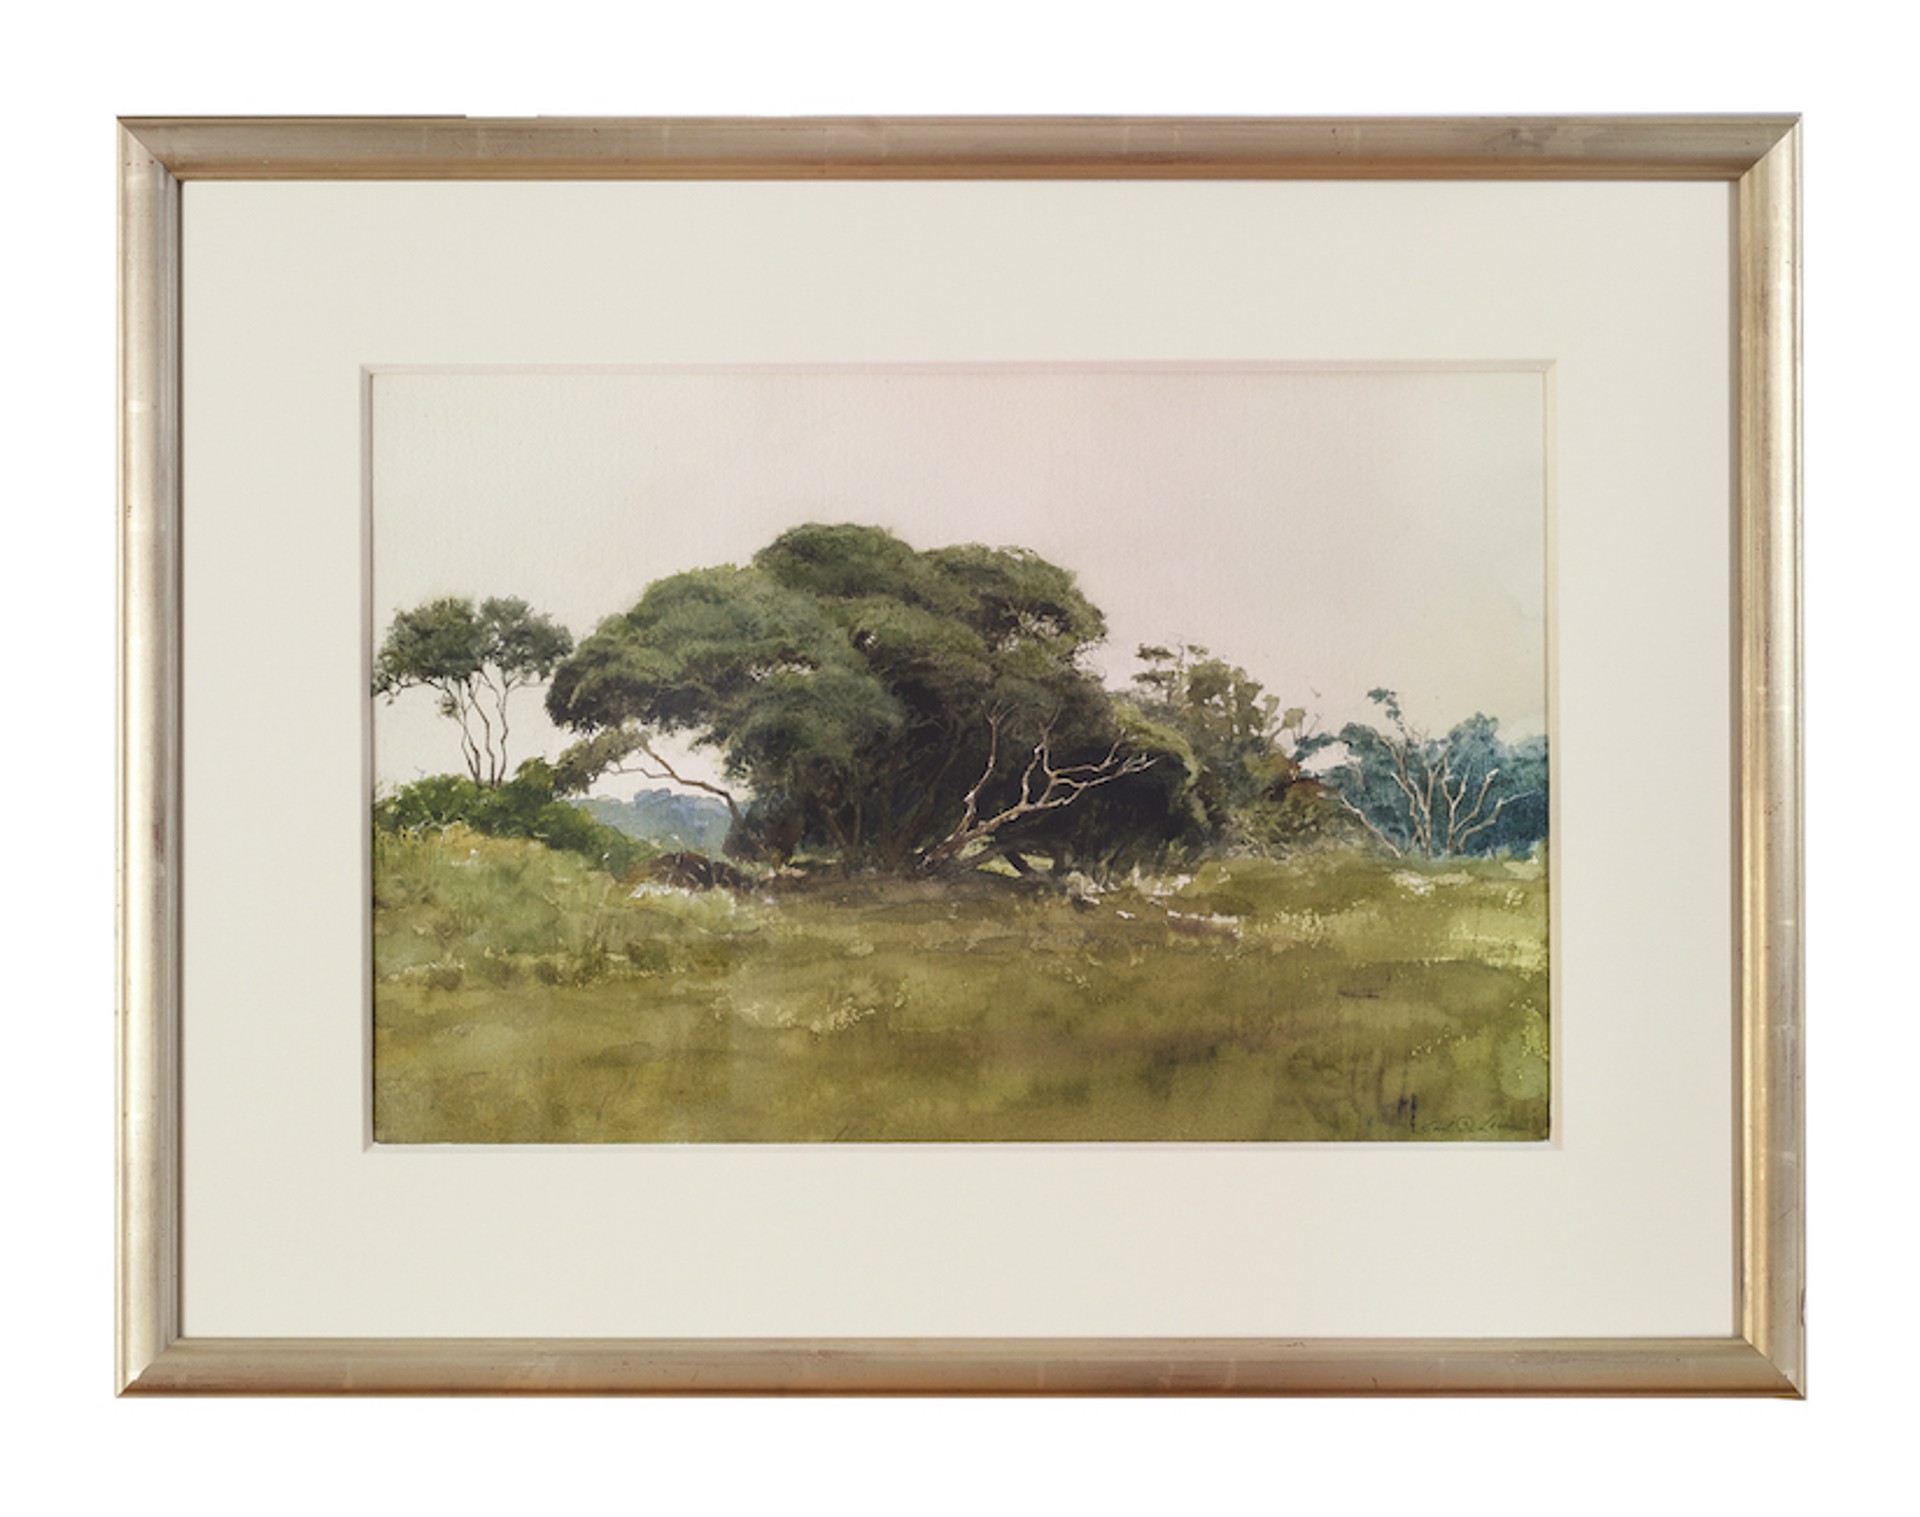 Kiawah Trees by Earl B. Lewis